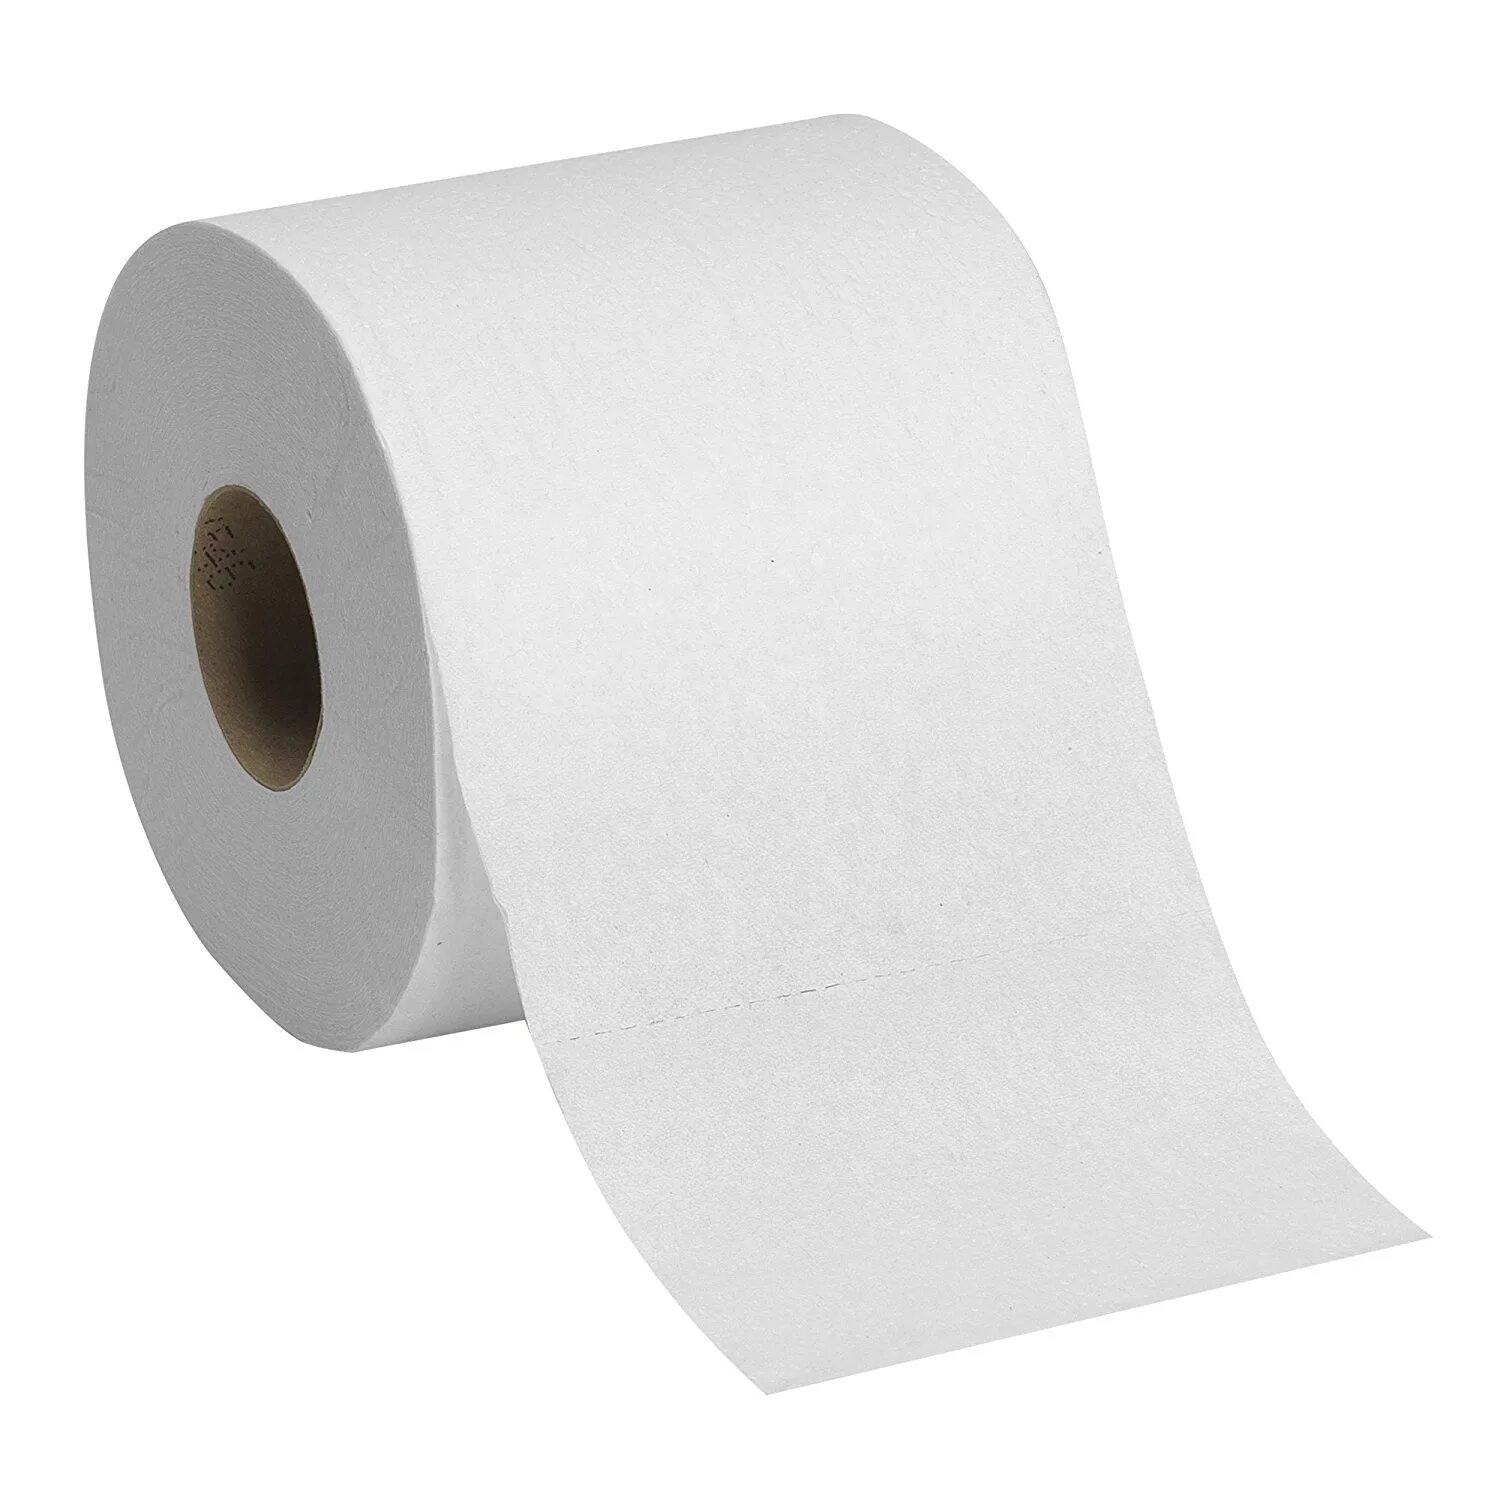 Серая бумага рулон. Рулон бумаги. Туалетная бумага. Рулон белой бумаги. Рулон белой туалетной бумаги.